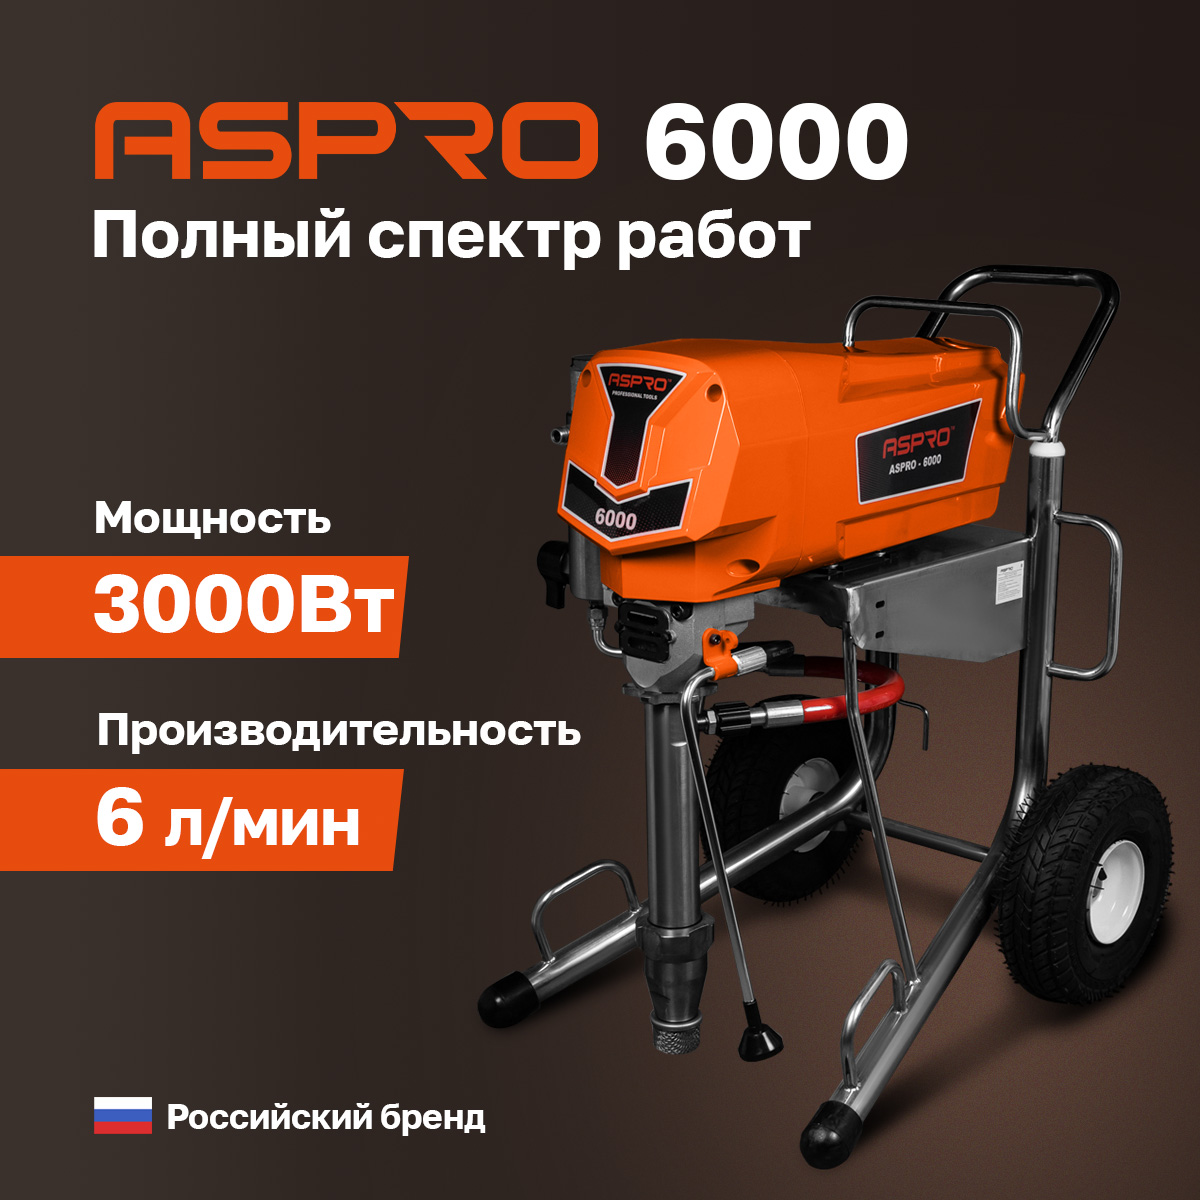 Окрасочный аппарат ASPRO-6000® окрасочный аппарат aspro 2200h 102561